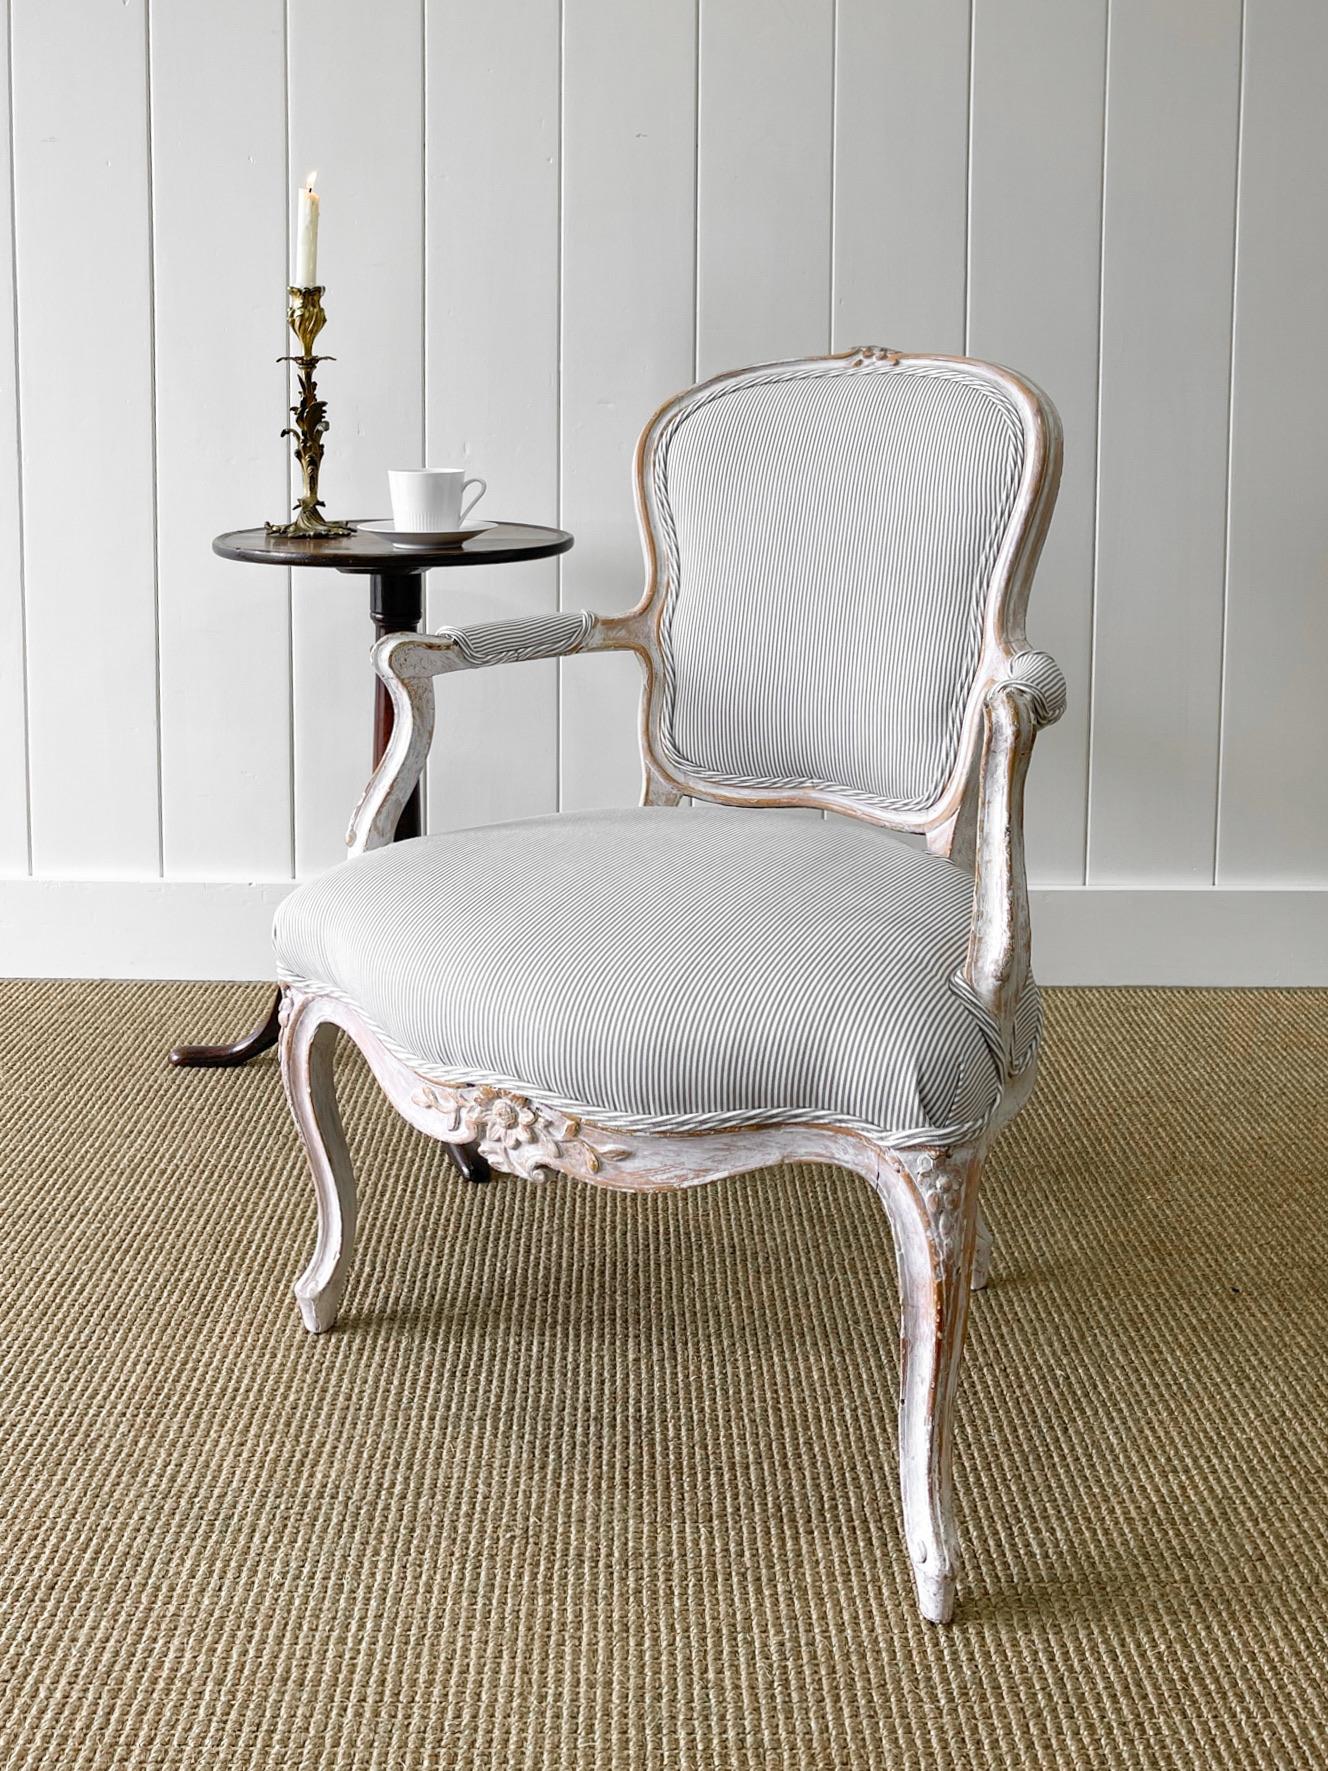 Ein herrlicher französischer Fauteuil-Sessel aus dem 18. Neu gepolstert mit einem Kravet-Ticking-Stoff aus 100% Leinen. Eine sehr gute Patina auf diesem Stuhl! Ausgezeichneter alter weißer Anstrich mit Andeutungen von Originalvergoldung. Exquisite